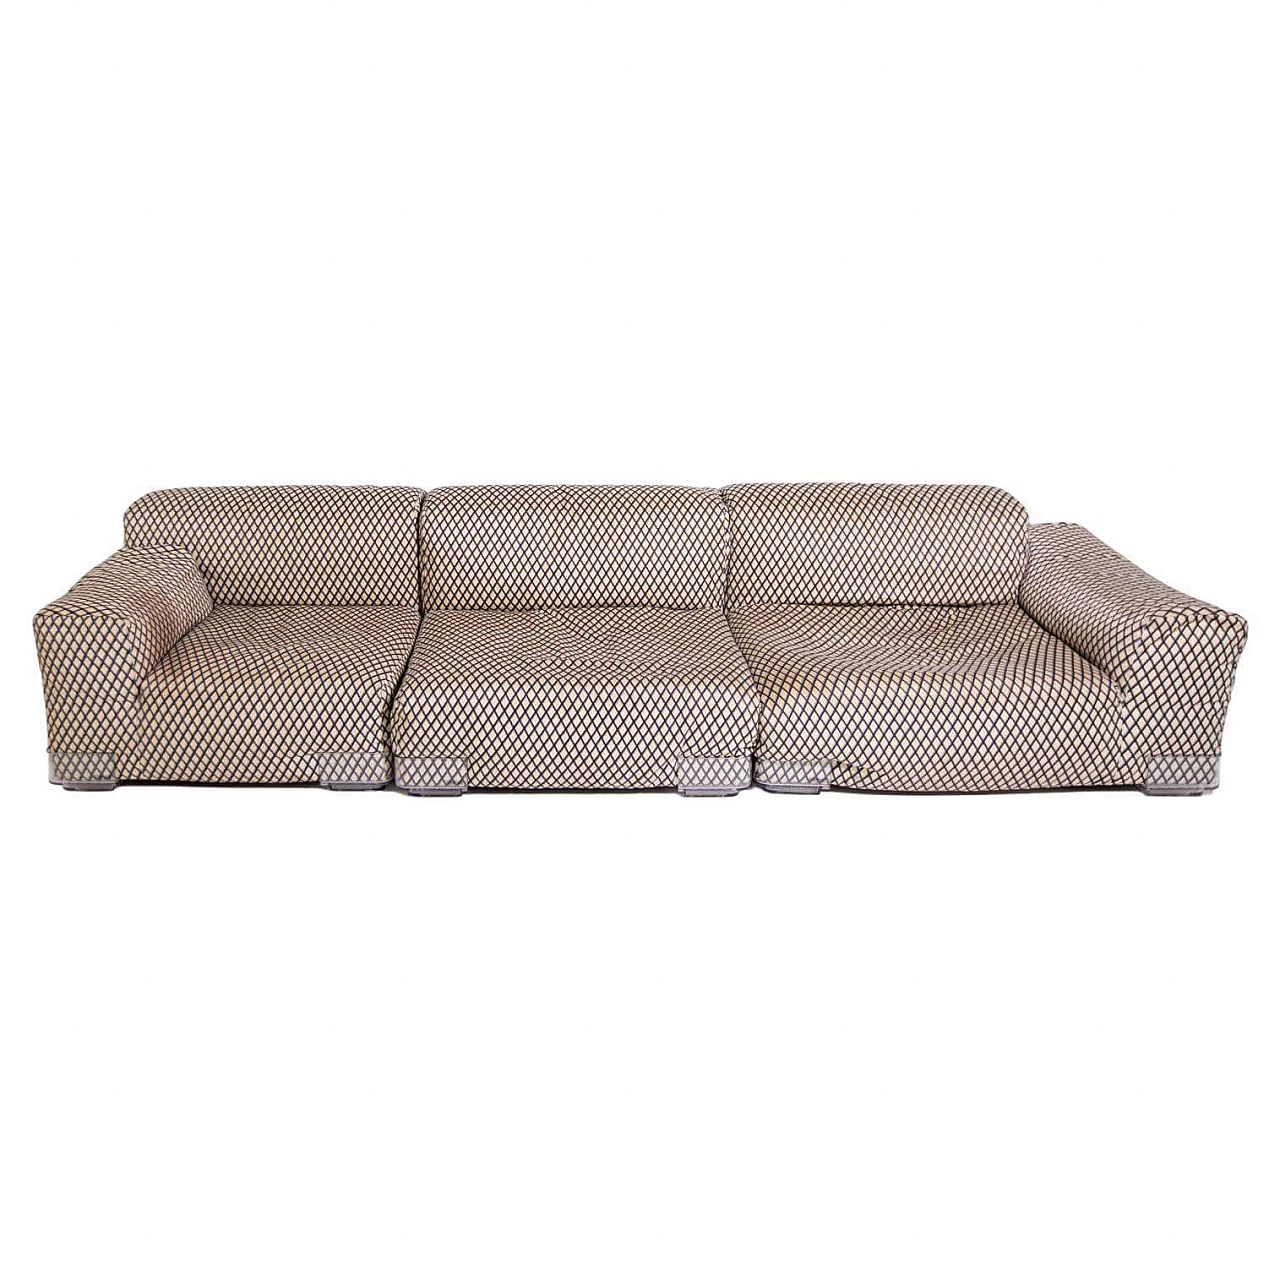 Memphis modular sofa by Ettore Sottsass for Kartell, 2000s 1383814